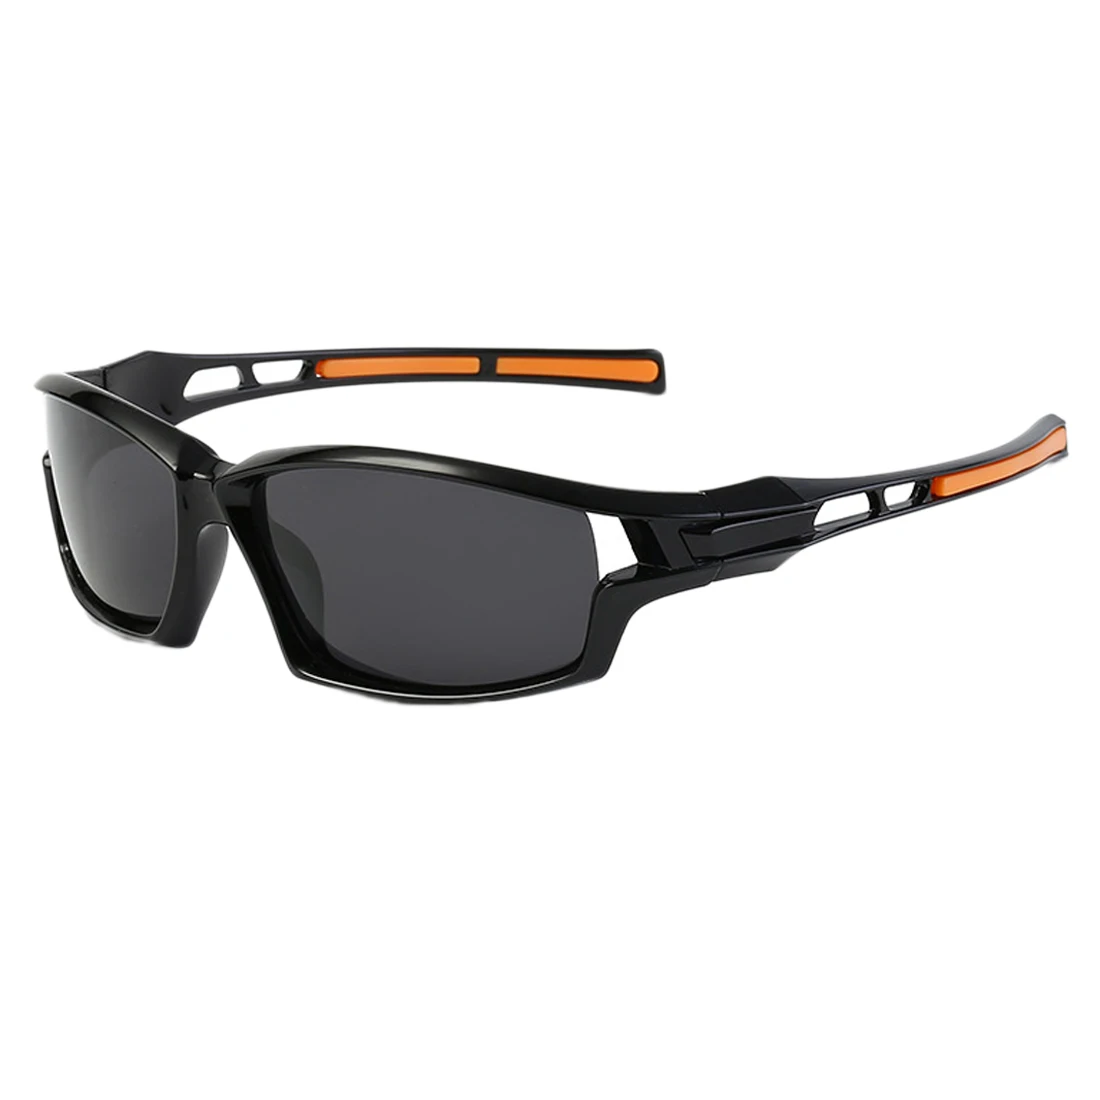 Поляризационные солнцезащитные очки для мужчин, солнцезащитные очки для пляжа, спорта на открытом воздухе, езды, вождения, мужские очки, аксессуары, очки для велосипеда - Цвет: frame gray